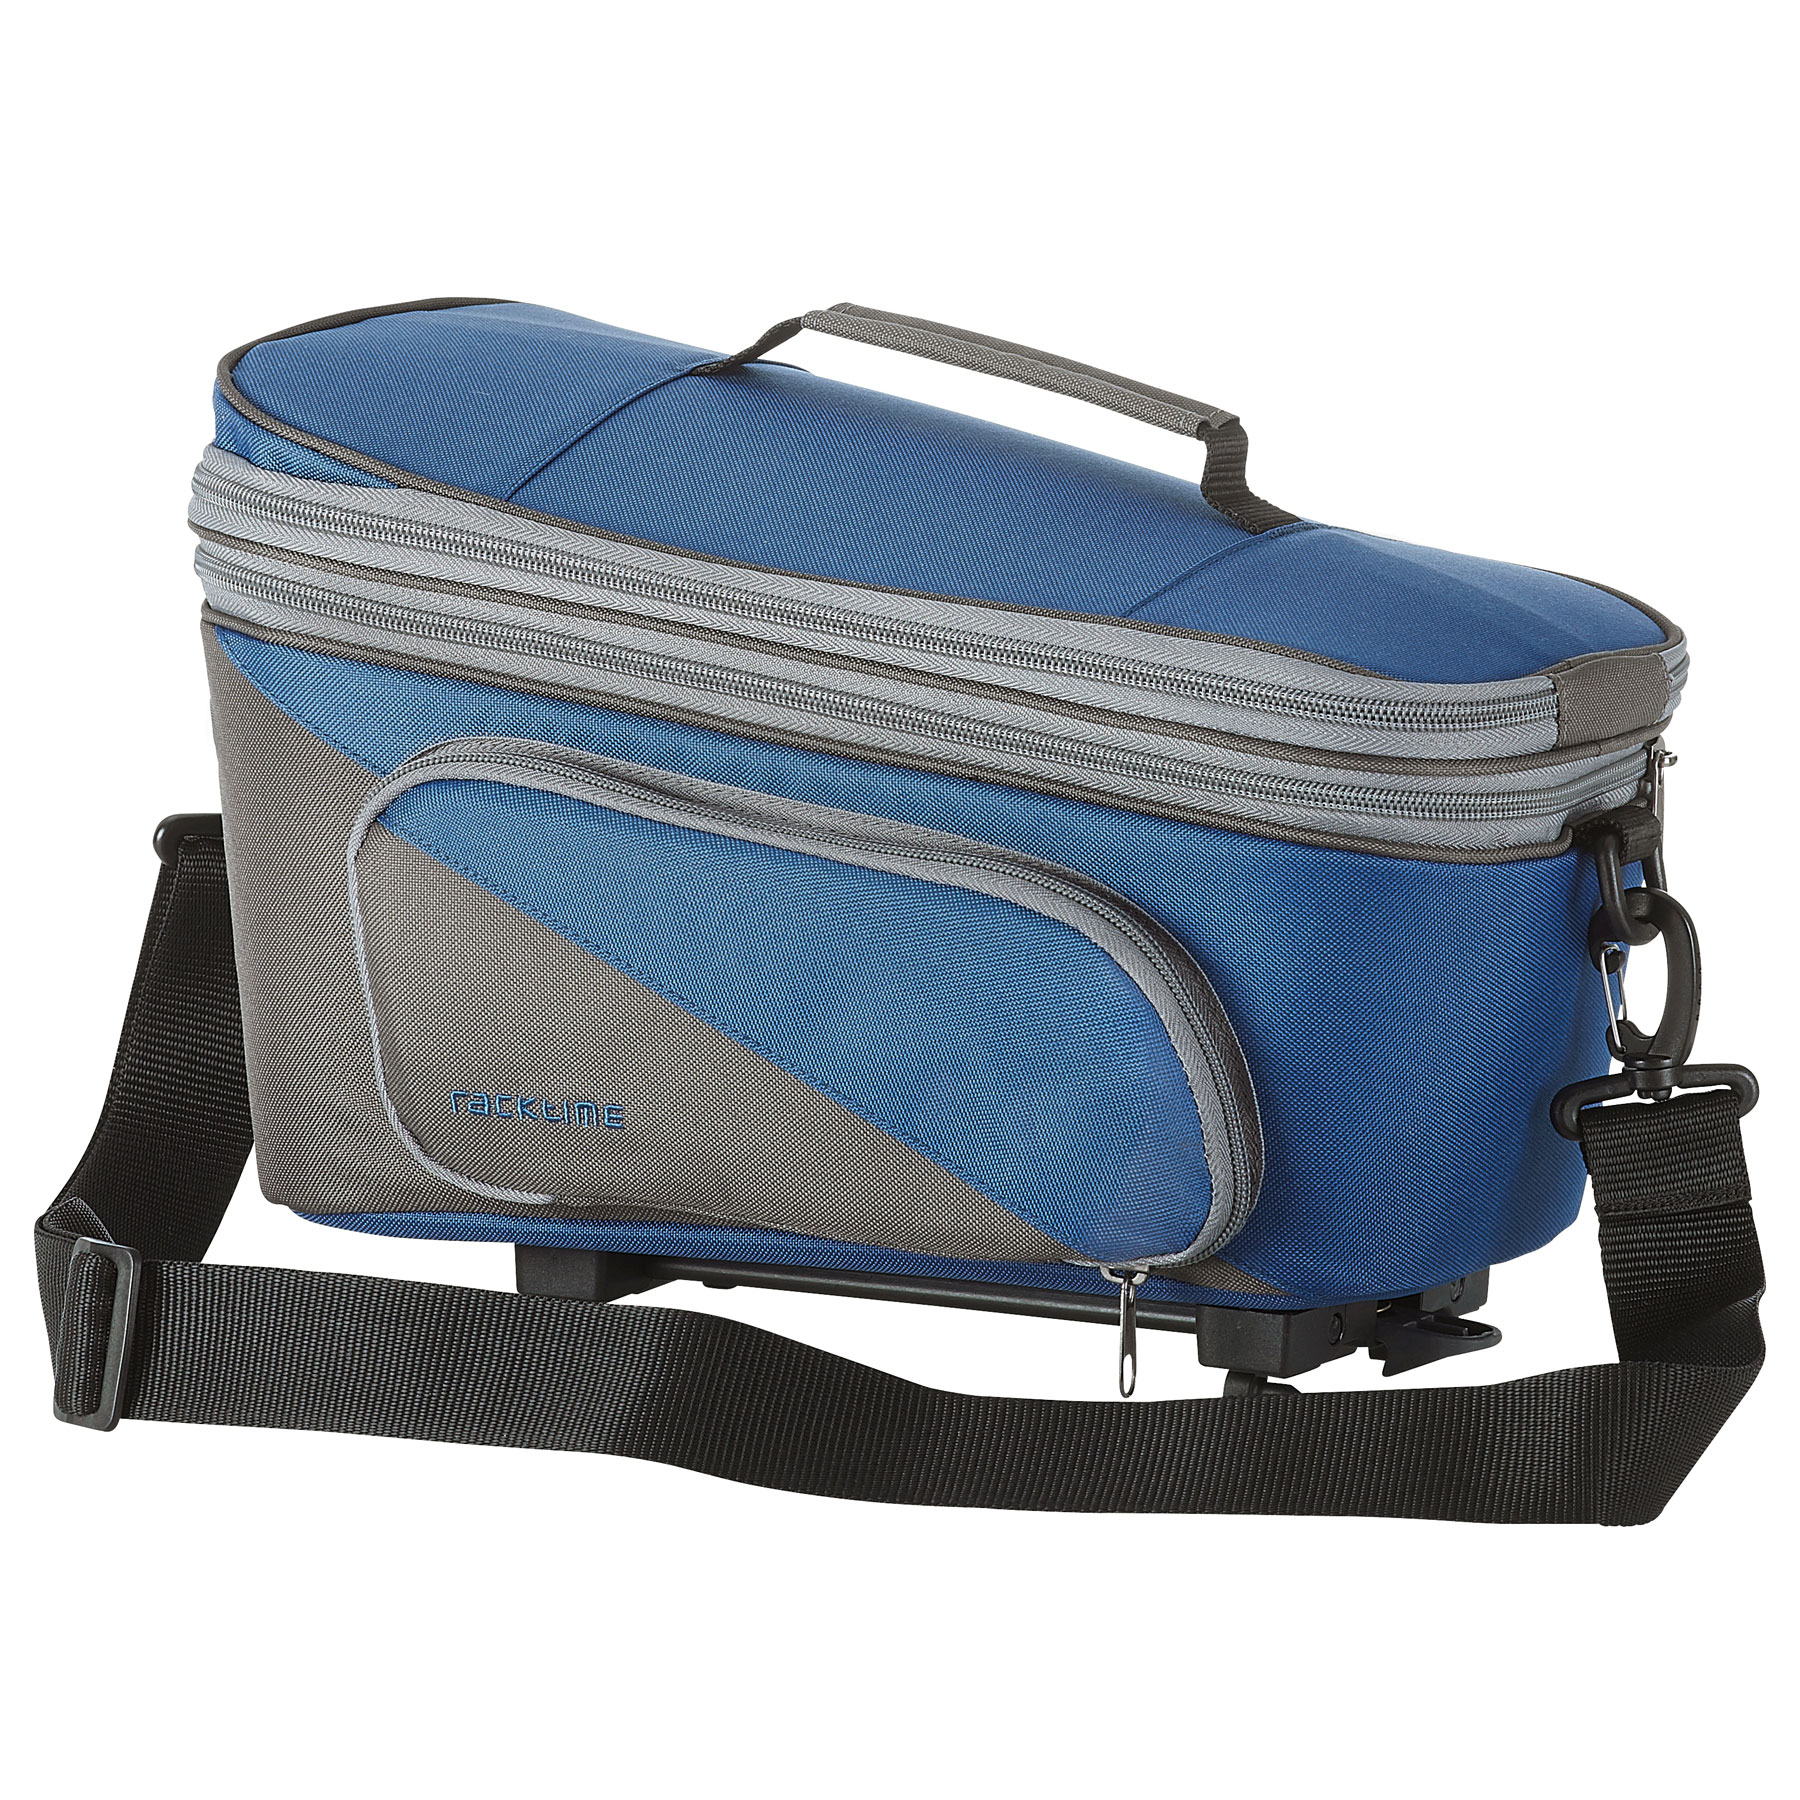 Produktbild von Racktime Talis Plus 2.0 Gepäckträgertasche 8L+7L - blau/grau